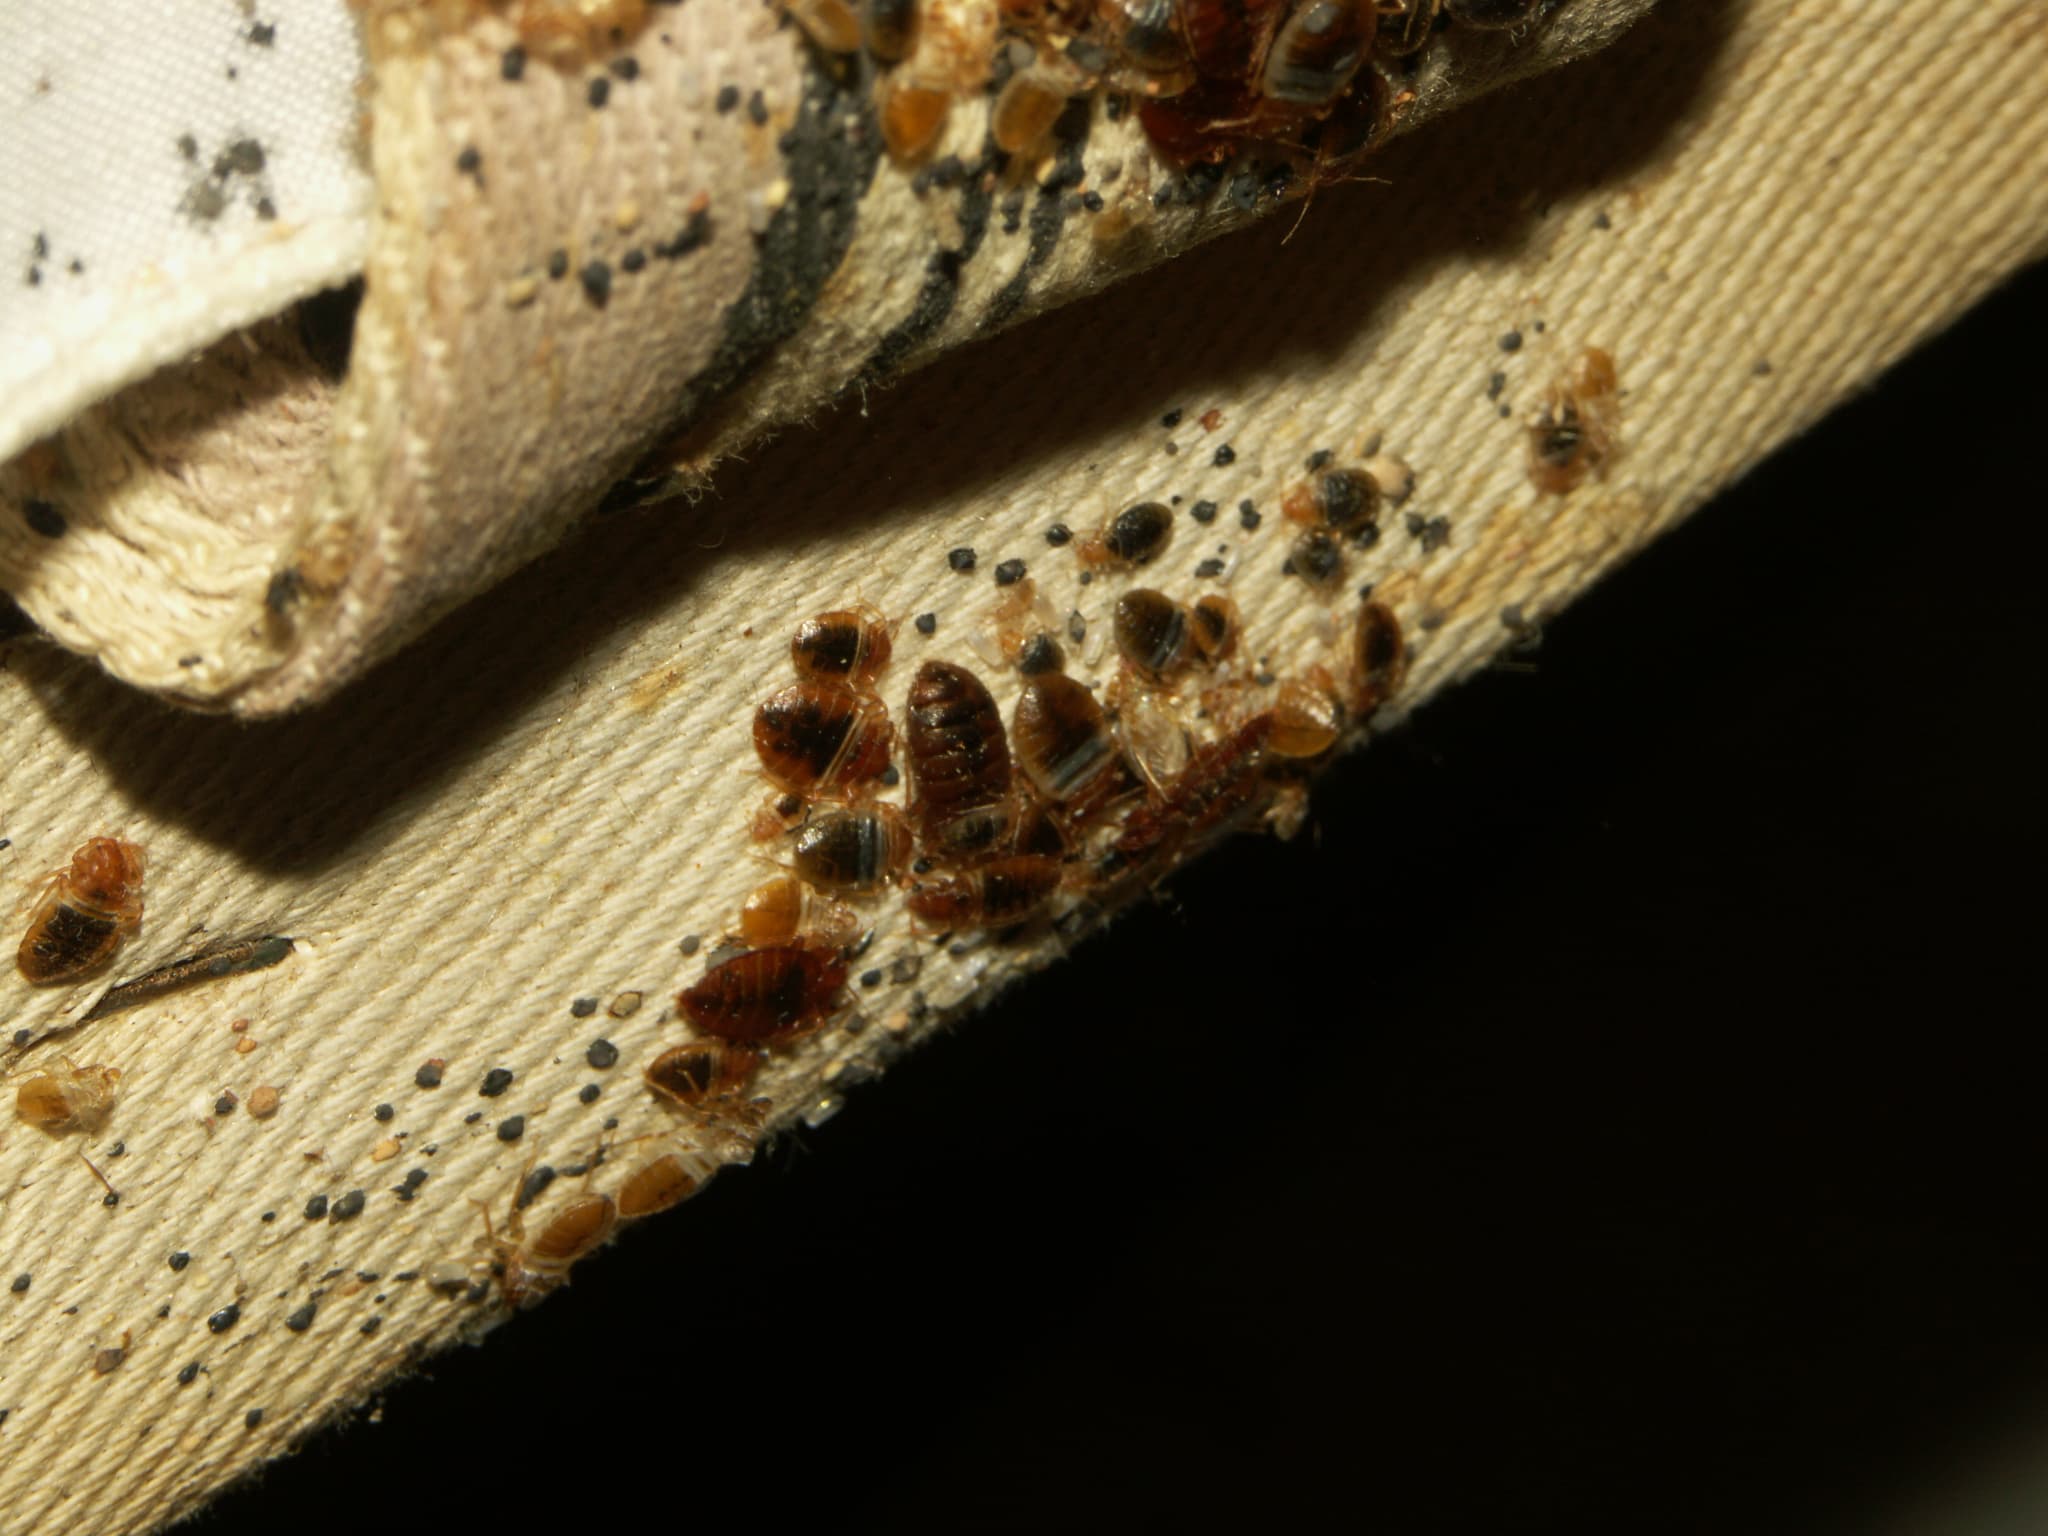 Punaises de lit : l'Anses alerte sur l'utilisation d'un insecticide  interdit